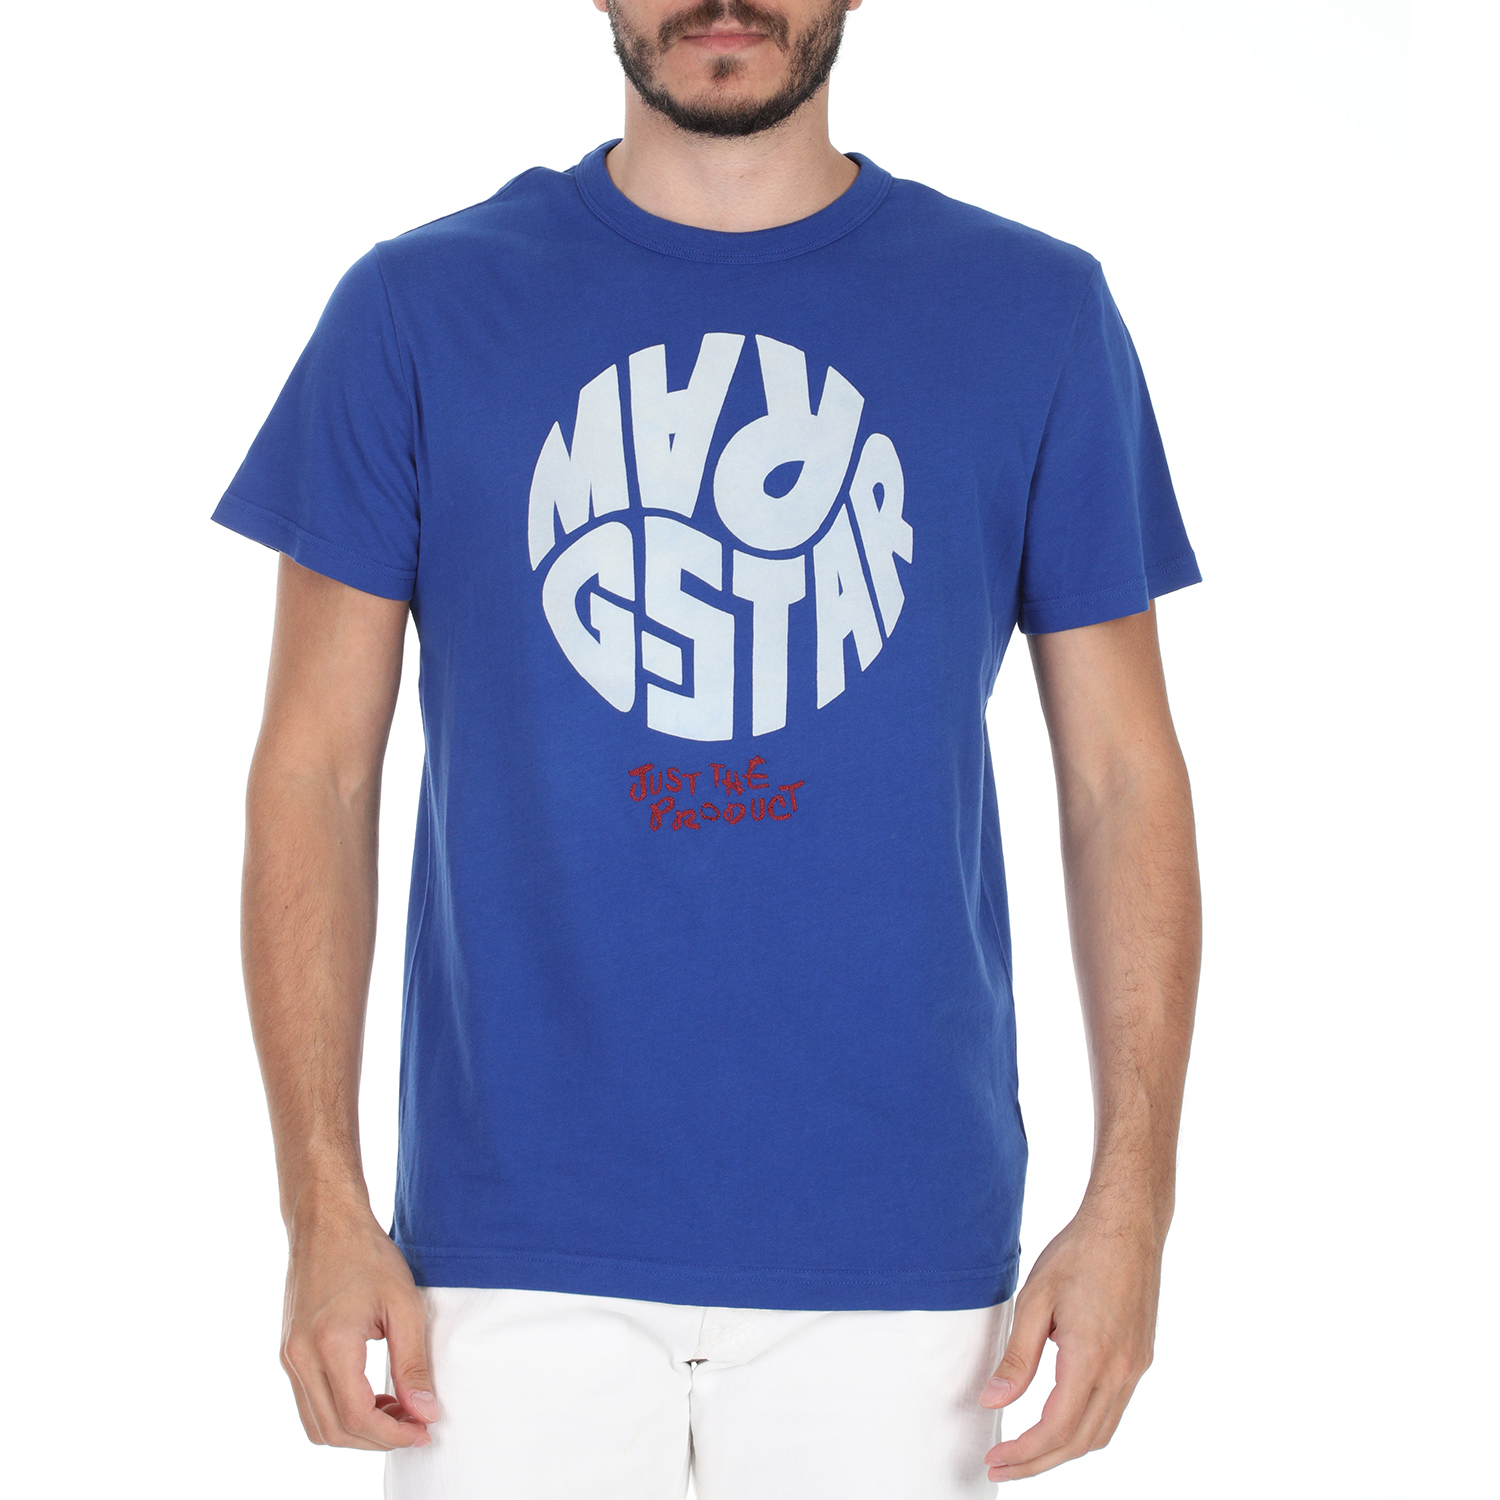 Ανδρικά/Ρούχα/Μπλούζες/Κοντομάνικες G-STAR RAW - Ανδρικό t-shirt G-STAR RAW GRAPHIC 6 R T SS μπλε